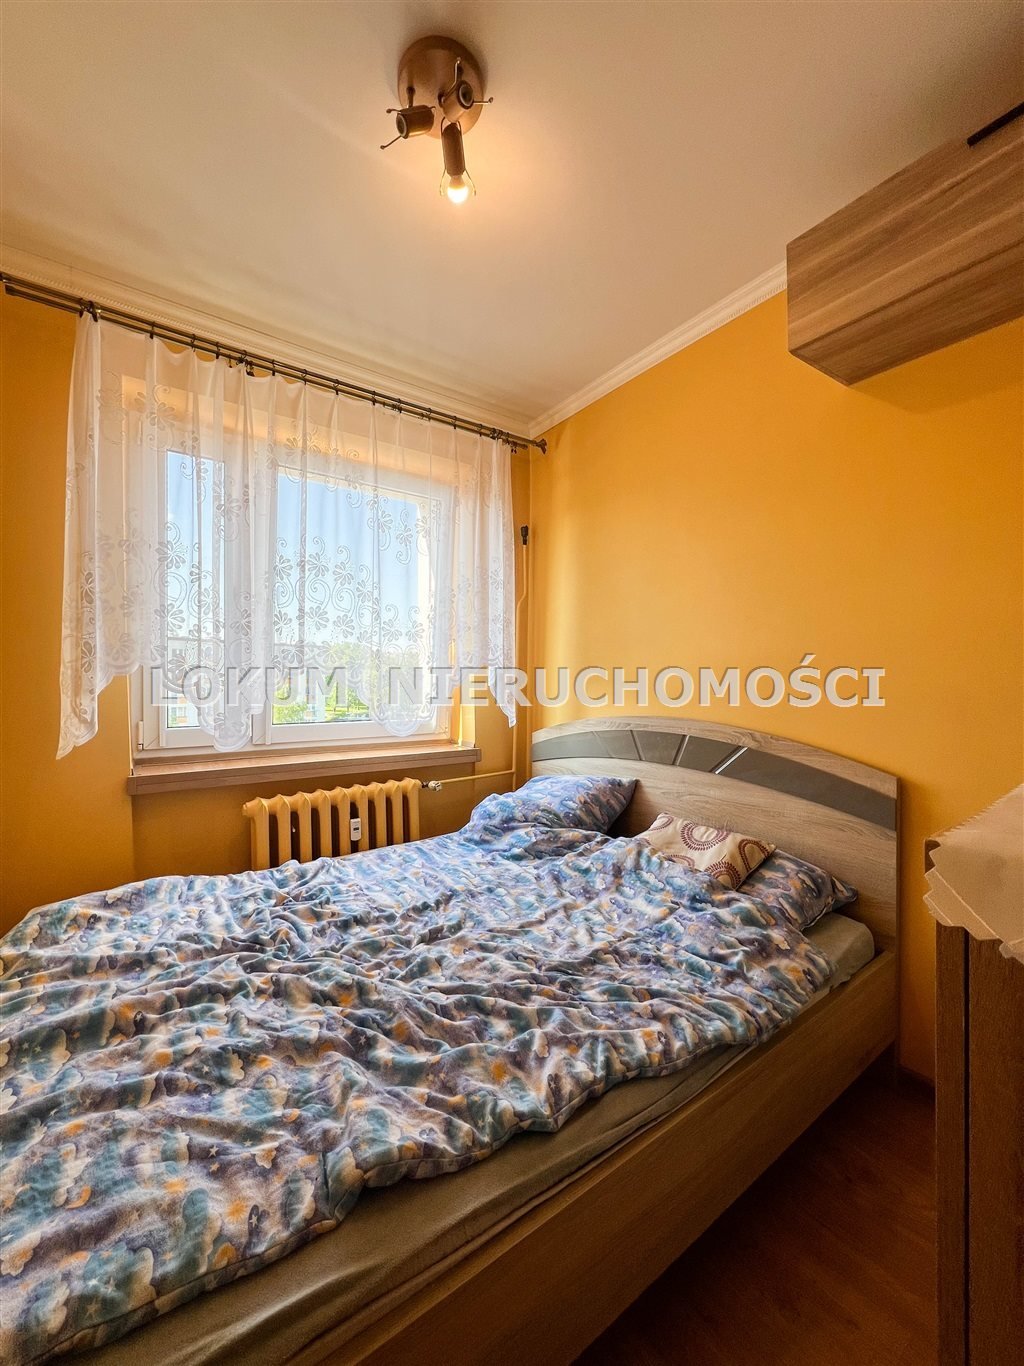 Mieszkanie trzypokojowe na sprzedaż Jastrzębie-Zdrój, Warmińska  47m2 Foto 8